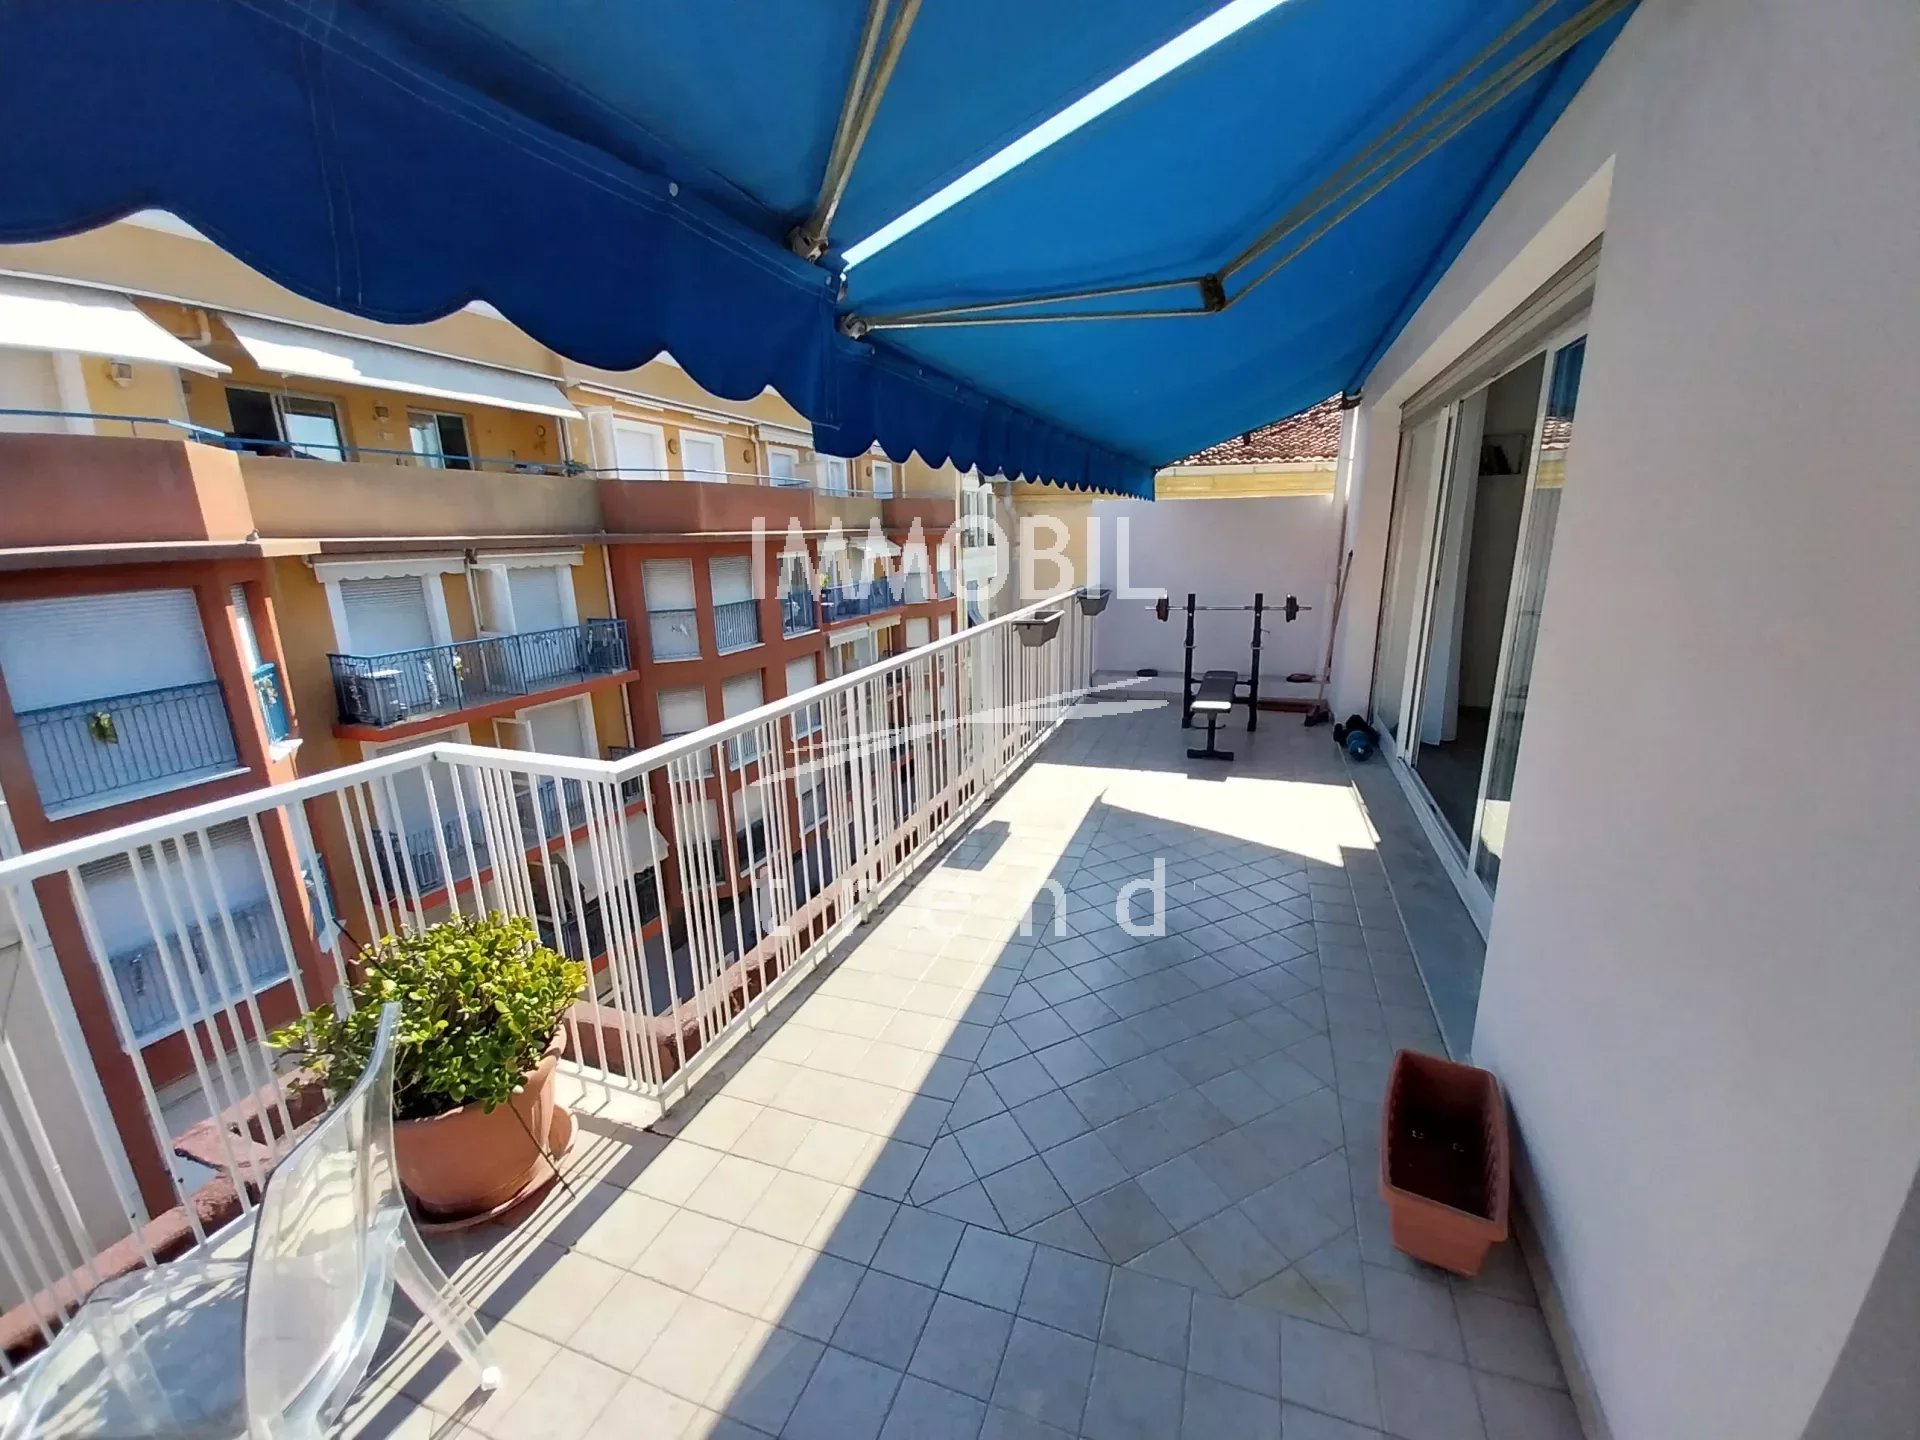 EXCLUSIVITE' - MENTON CENTRE - Dernier étage - Appartement deux pièces traversant avec deux terrasses